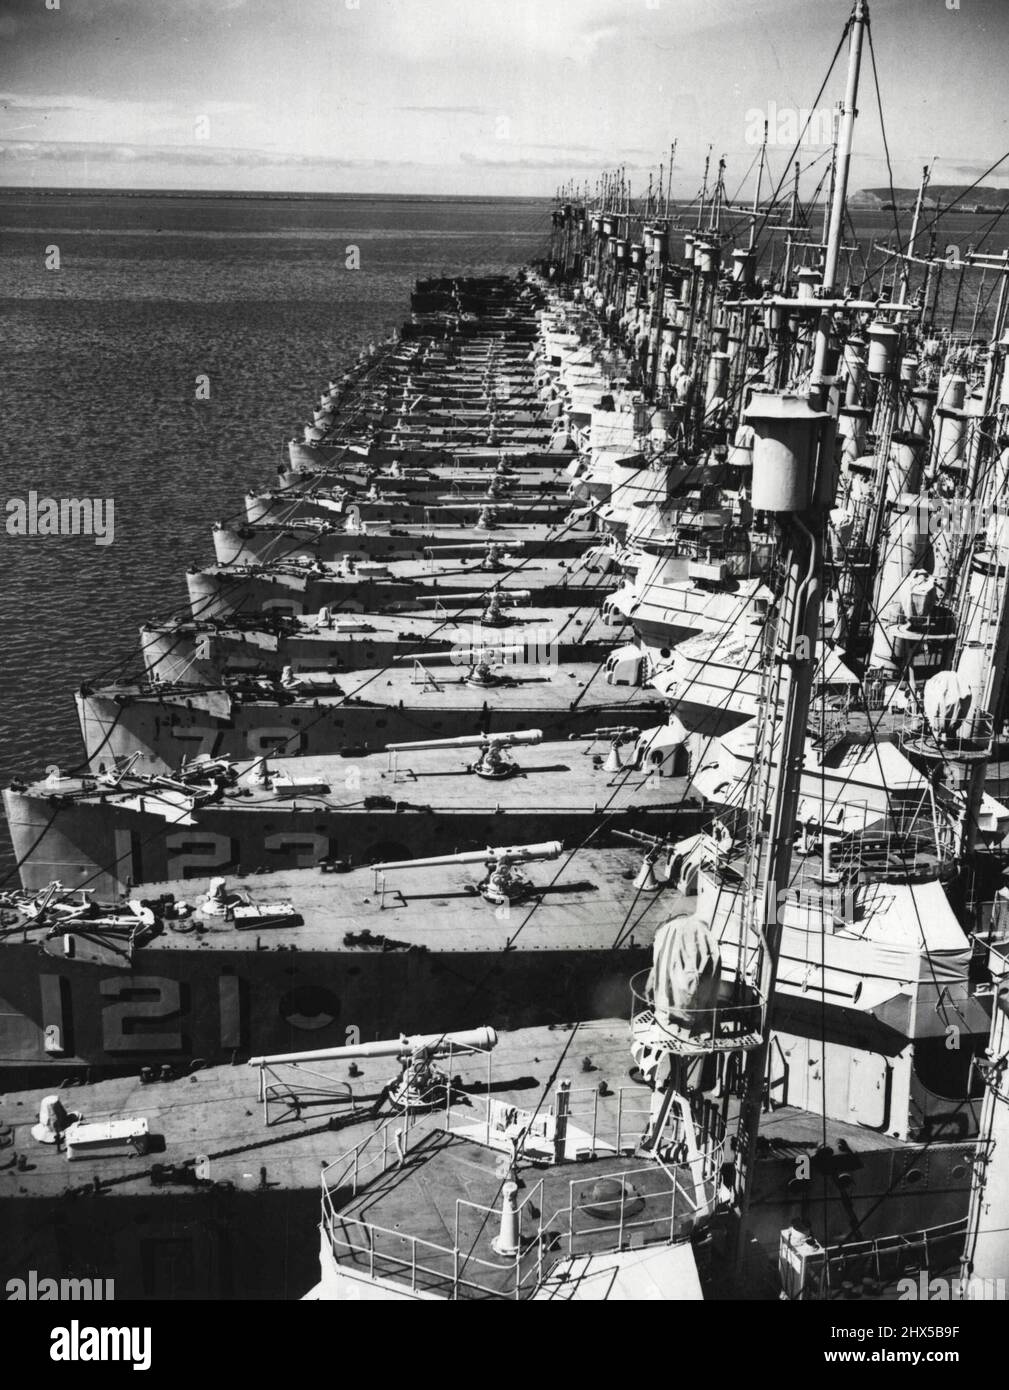 ***** Oben sind die beauftragten Zerstörer der US Navy auf dem Marinestützpunkt in San Diego, Kalifornien, dargestellt, die für einen Kriegsnotstand aufbereitet werden. Unter der Leitung von Capt. Byron McCandless, dem Kommandanten der Basis, werden diese Zerstörer überholt. Die Turbinen, Bewaffnung, Masten, Stapel, Geschütze, Torpedos und Decks werden für jeden Notfall vorbereitet. 4. April 1939. (Foto von Wide World Photos). Stockfoto